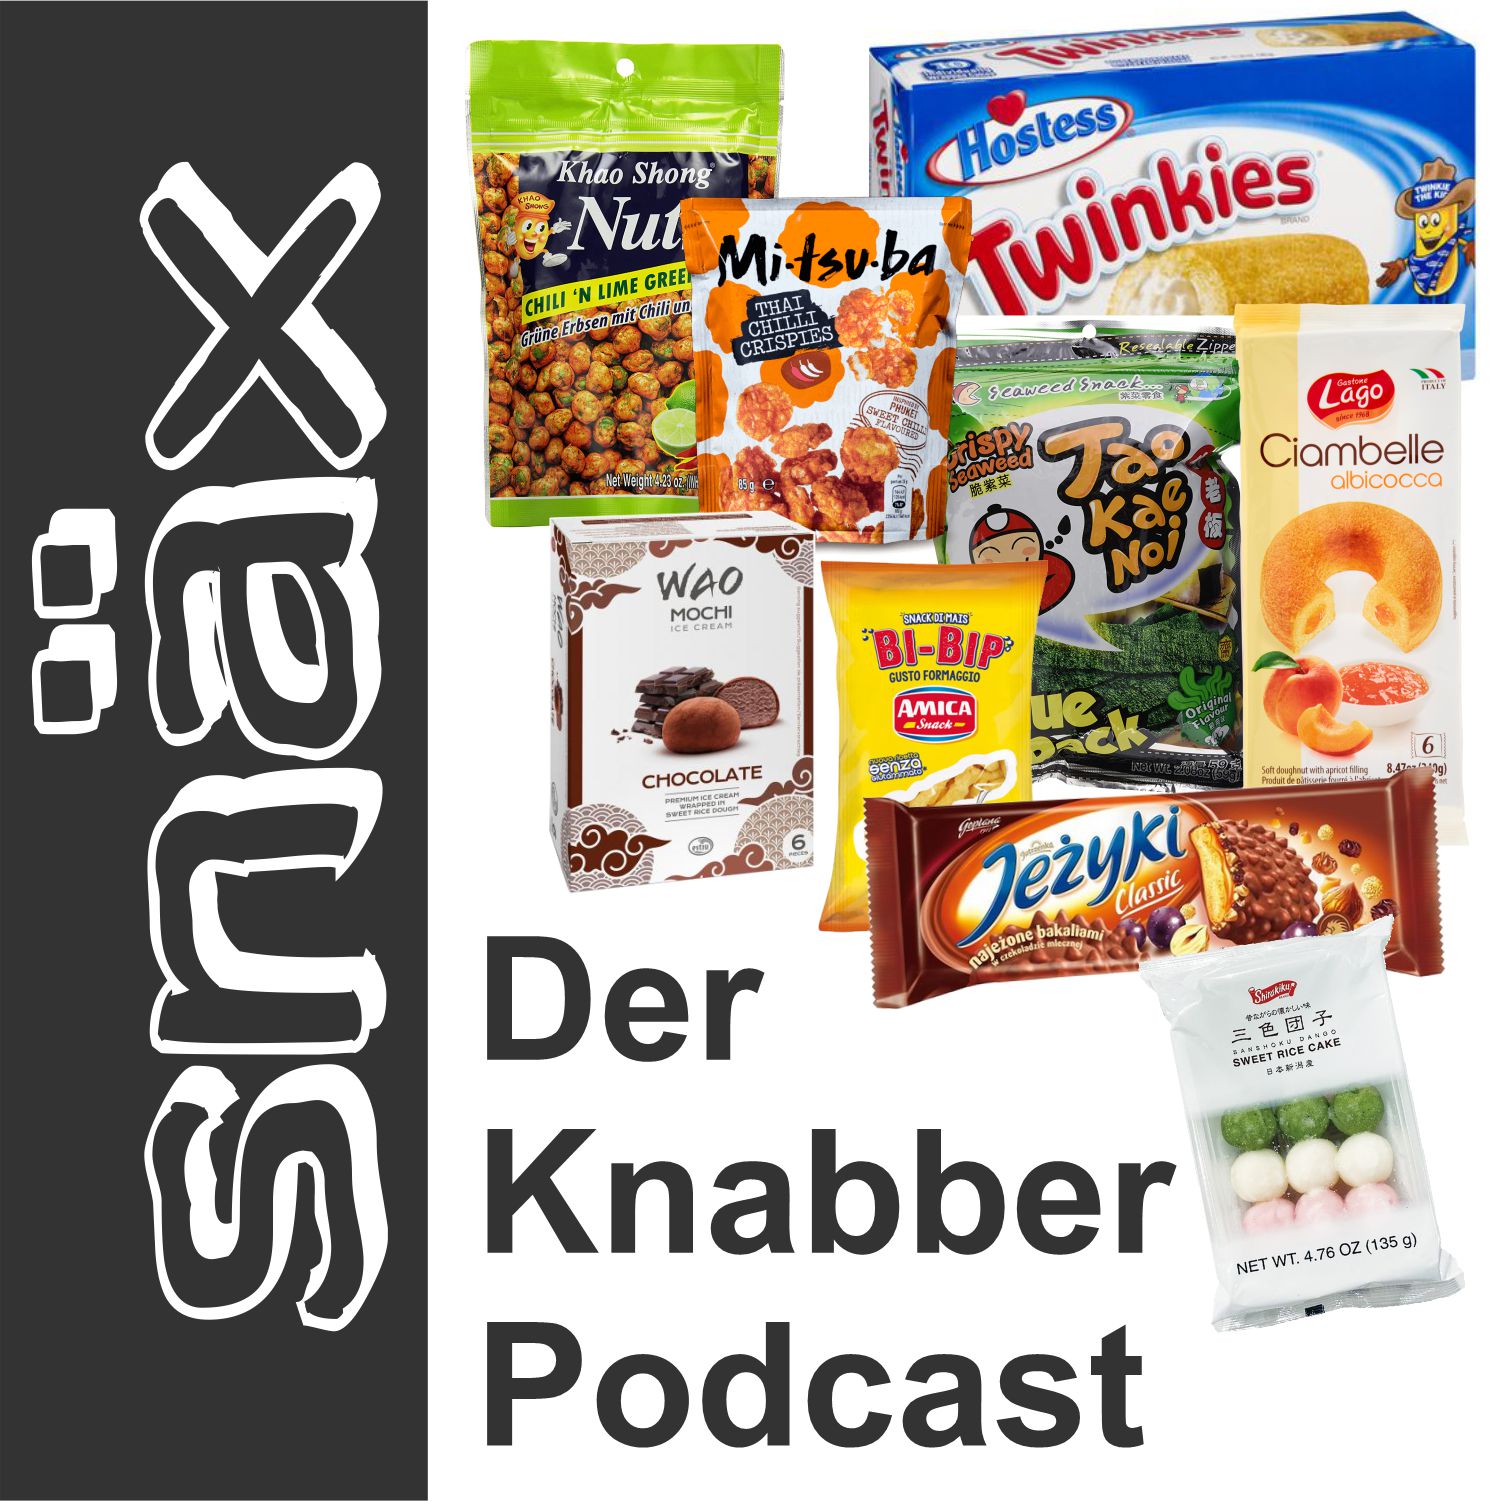 (c) Snäx-podcast.de